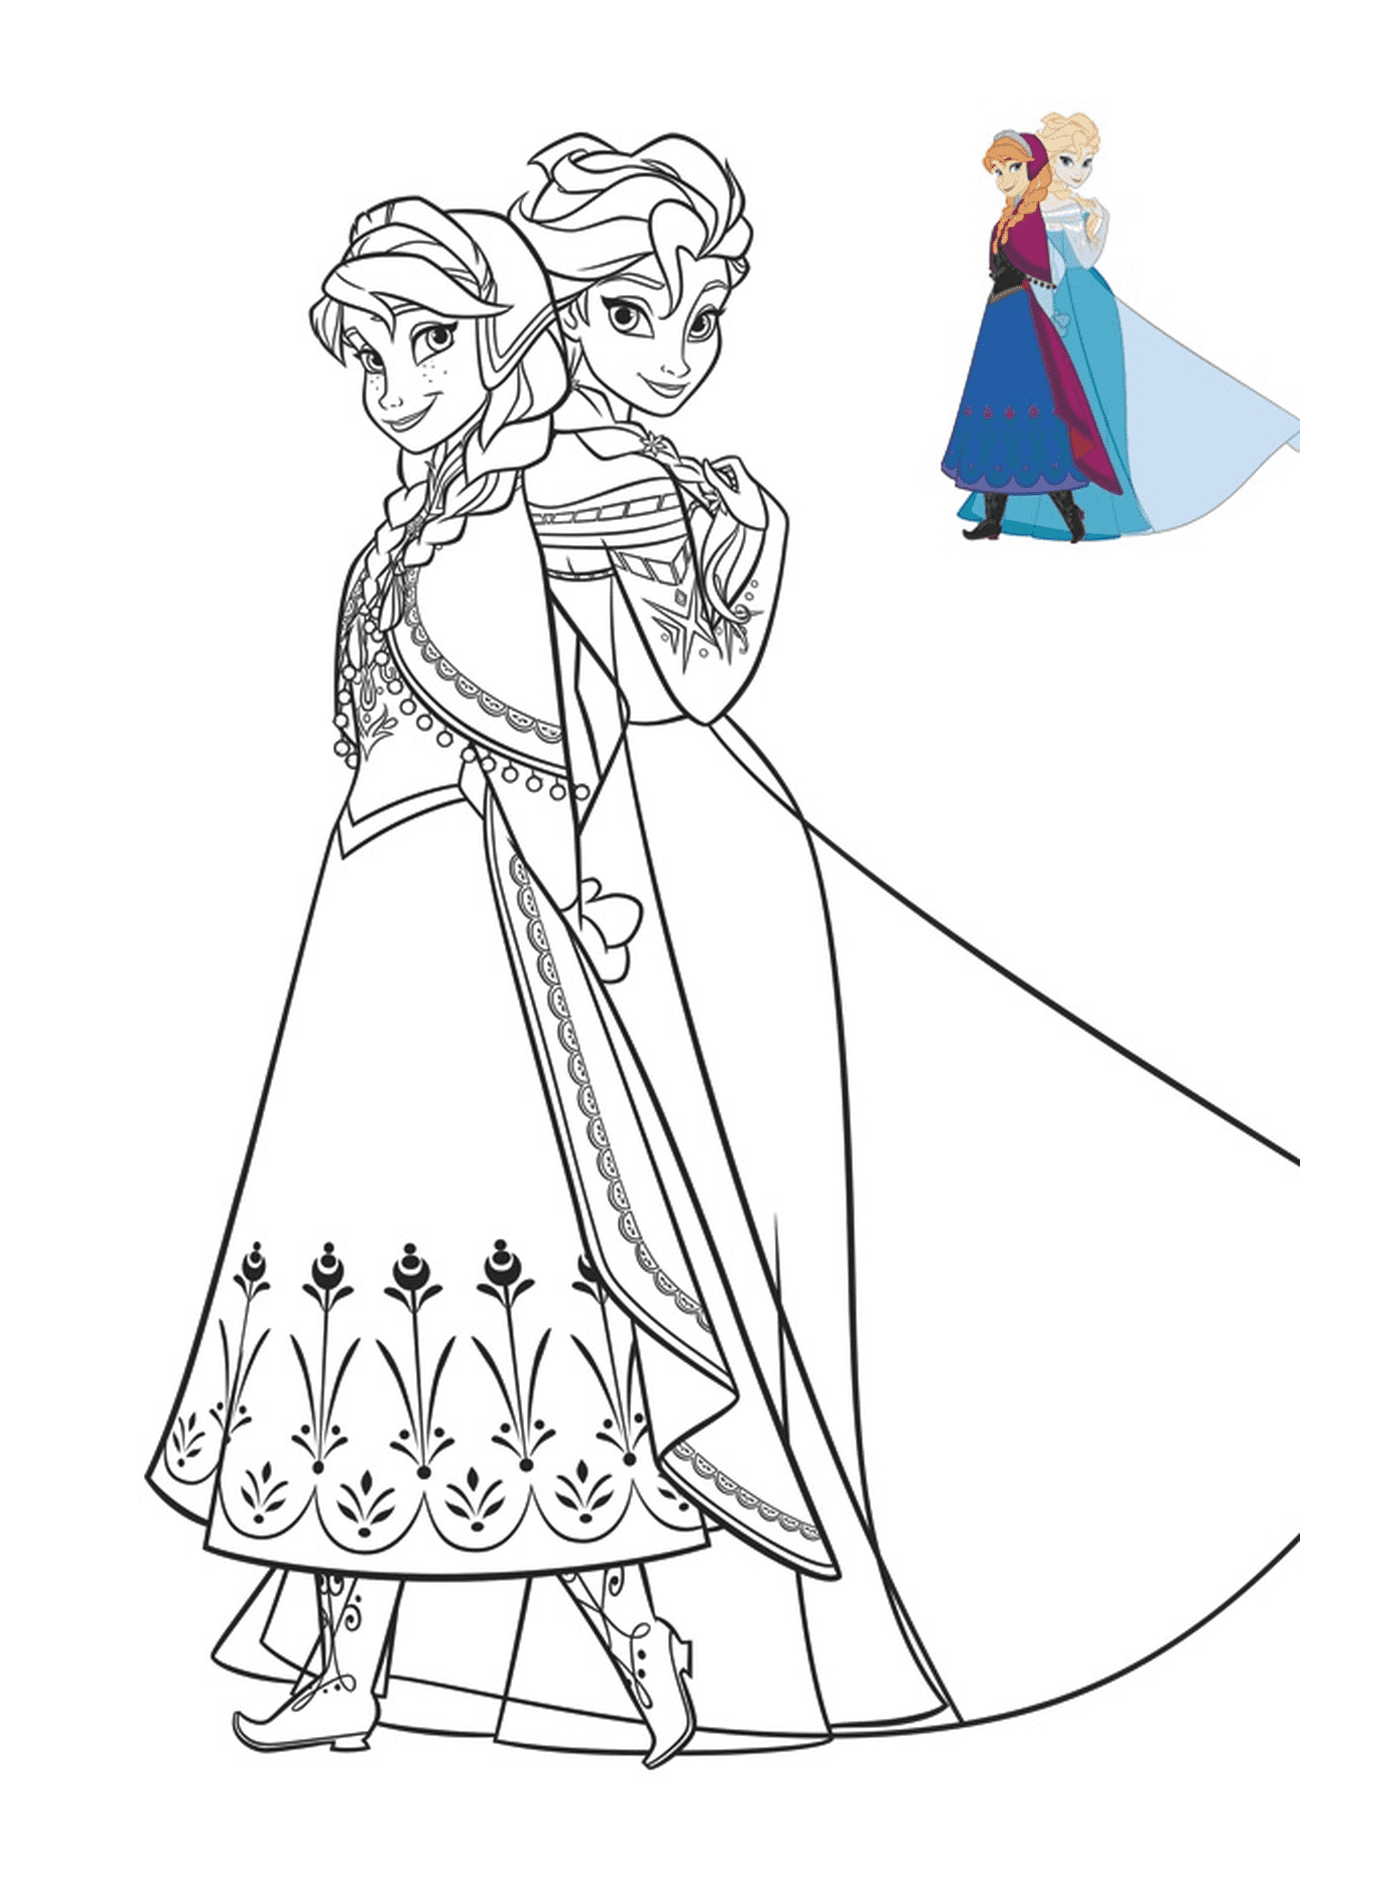  Anna ed Elsa in splendidi vestiti 